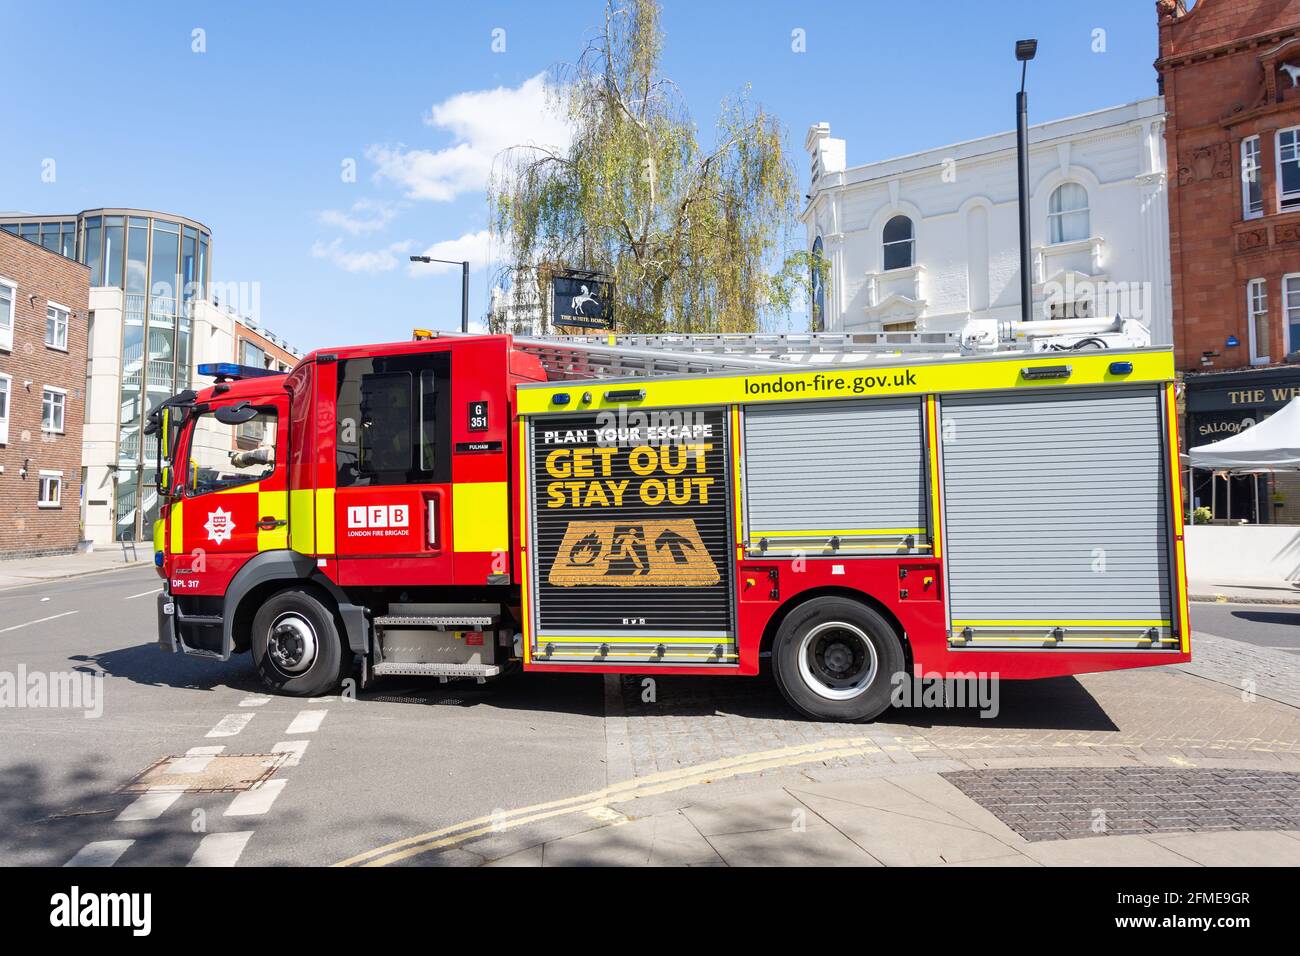 Feuerwehrmotor der Londoner Feuerwehr auf Abruf, Parsons Green, London Borough of Hammersmith and Fulham, Greater London, England, Vereinigtes Königreich Stockfoto